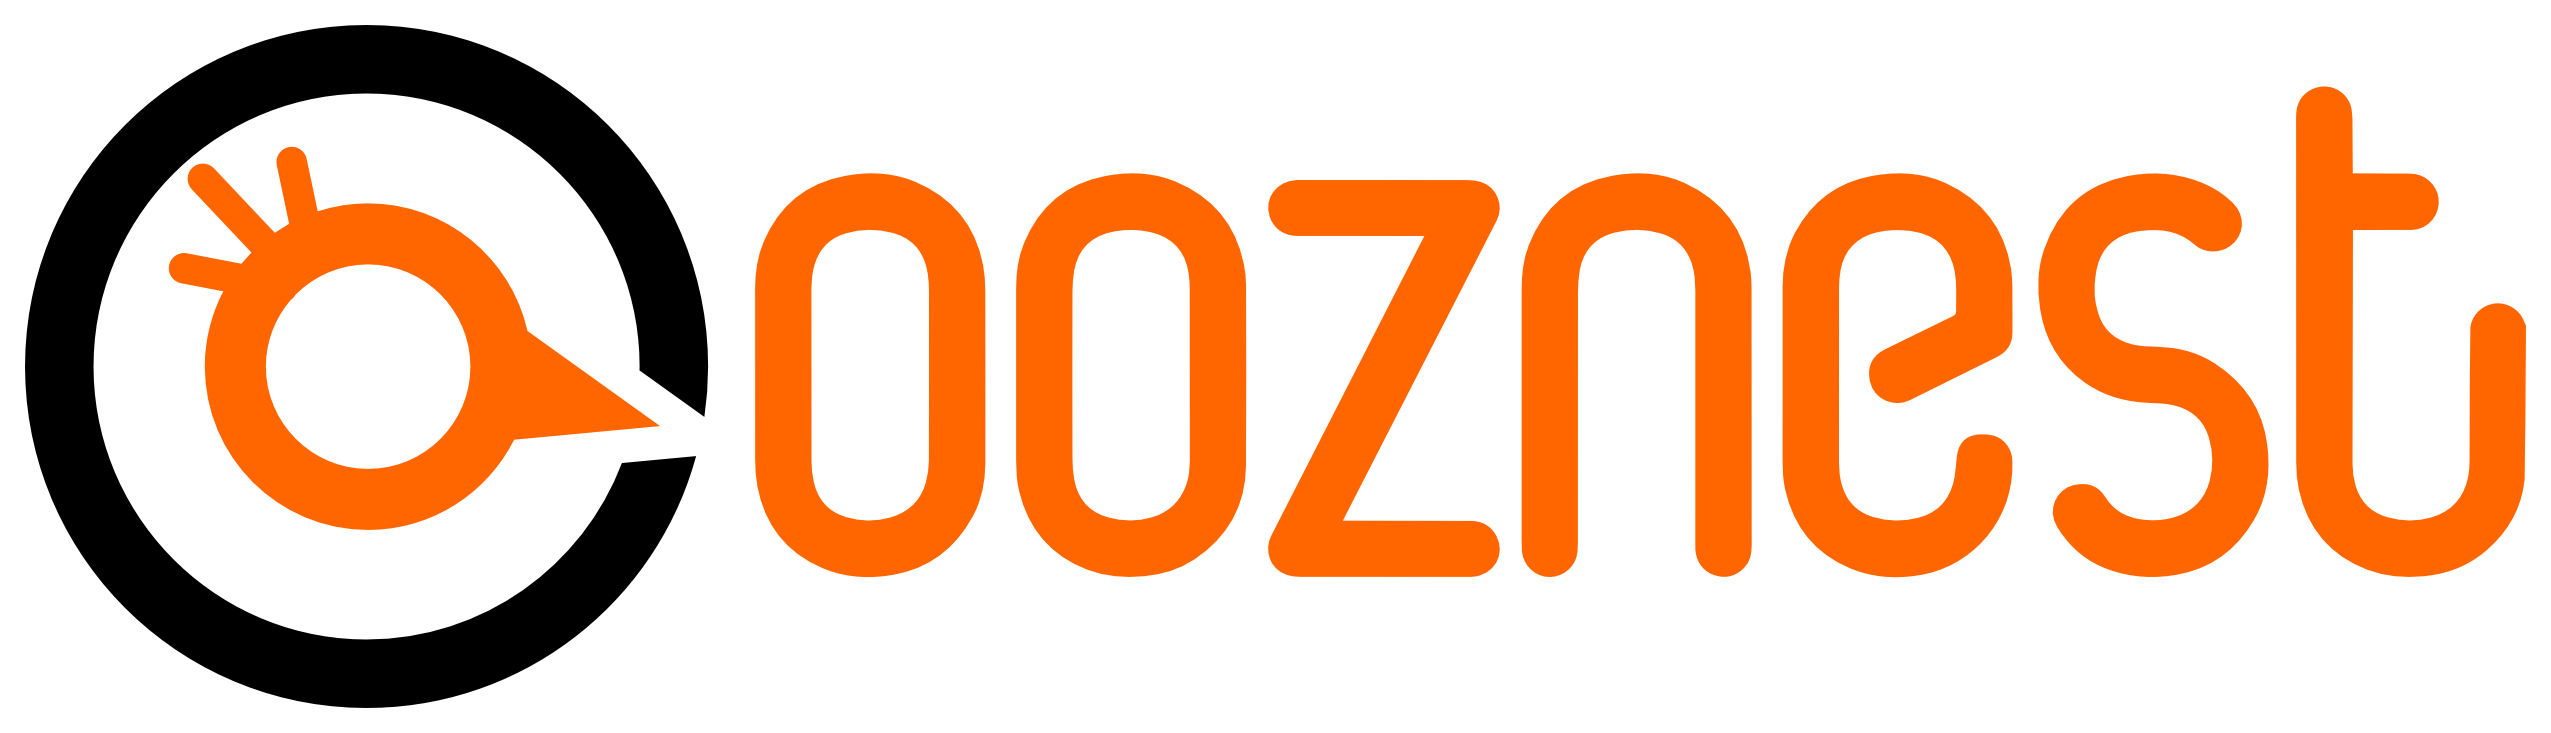 OOZNEST Logo